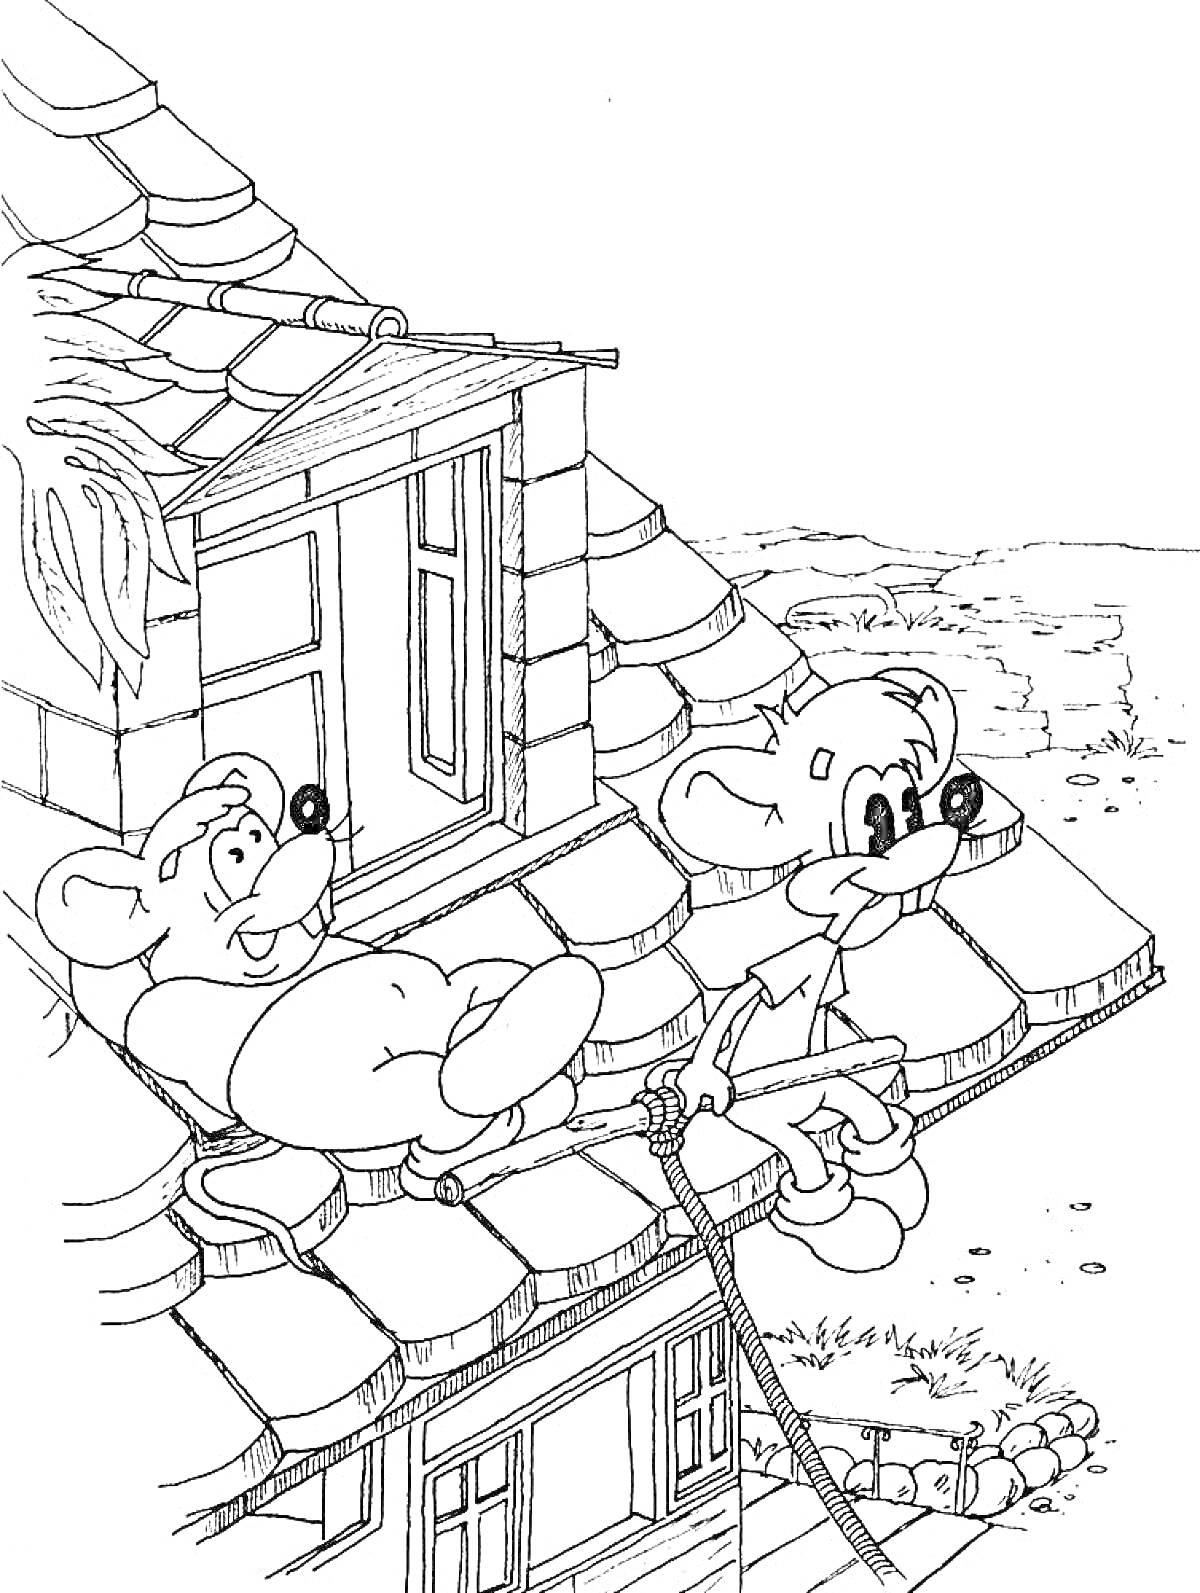 Раскраска Две мышки на крыше дома с покатой крышей, окно на чердаке, веревка, ведущая вниз